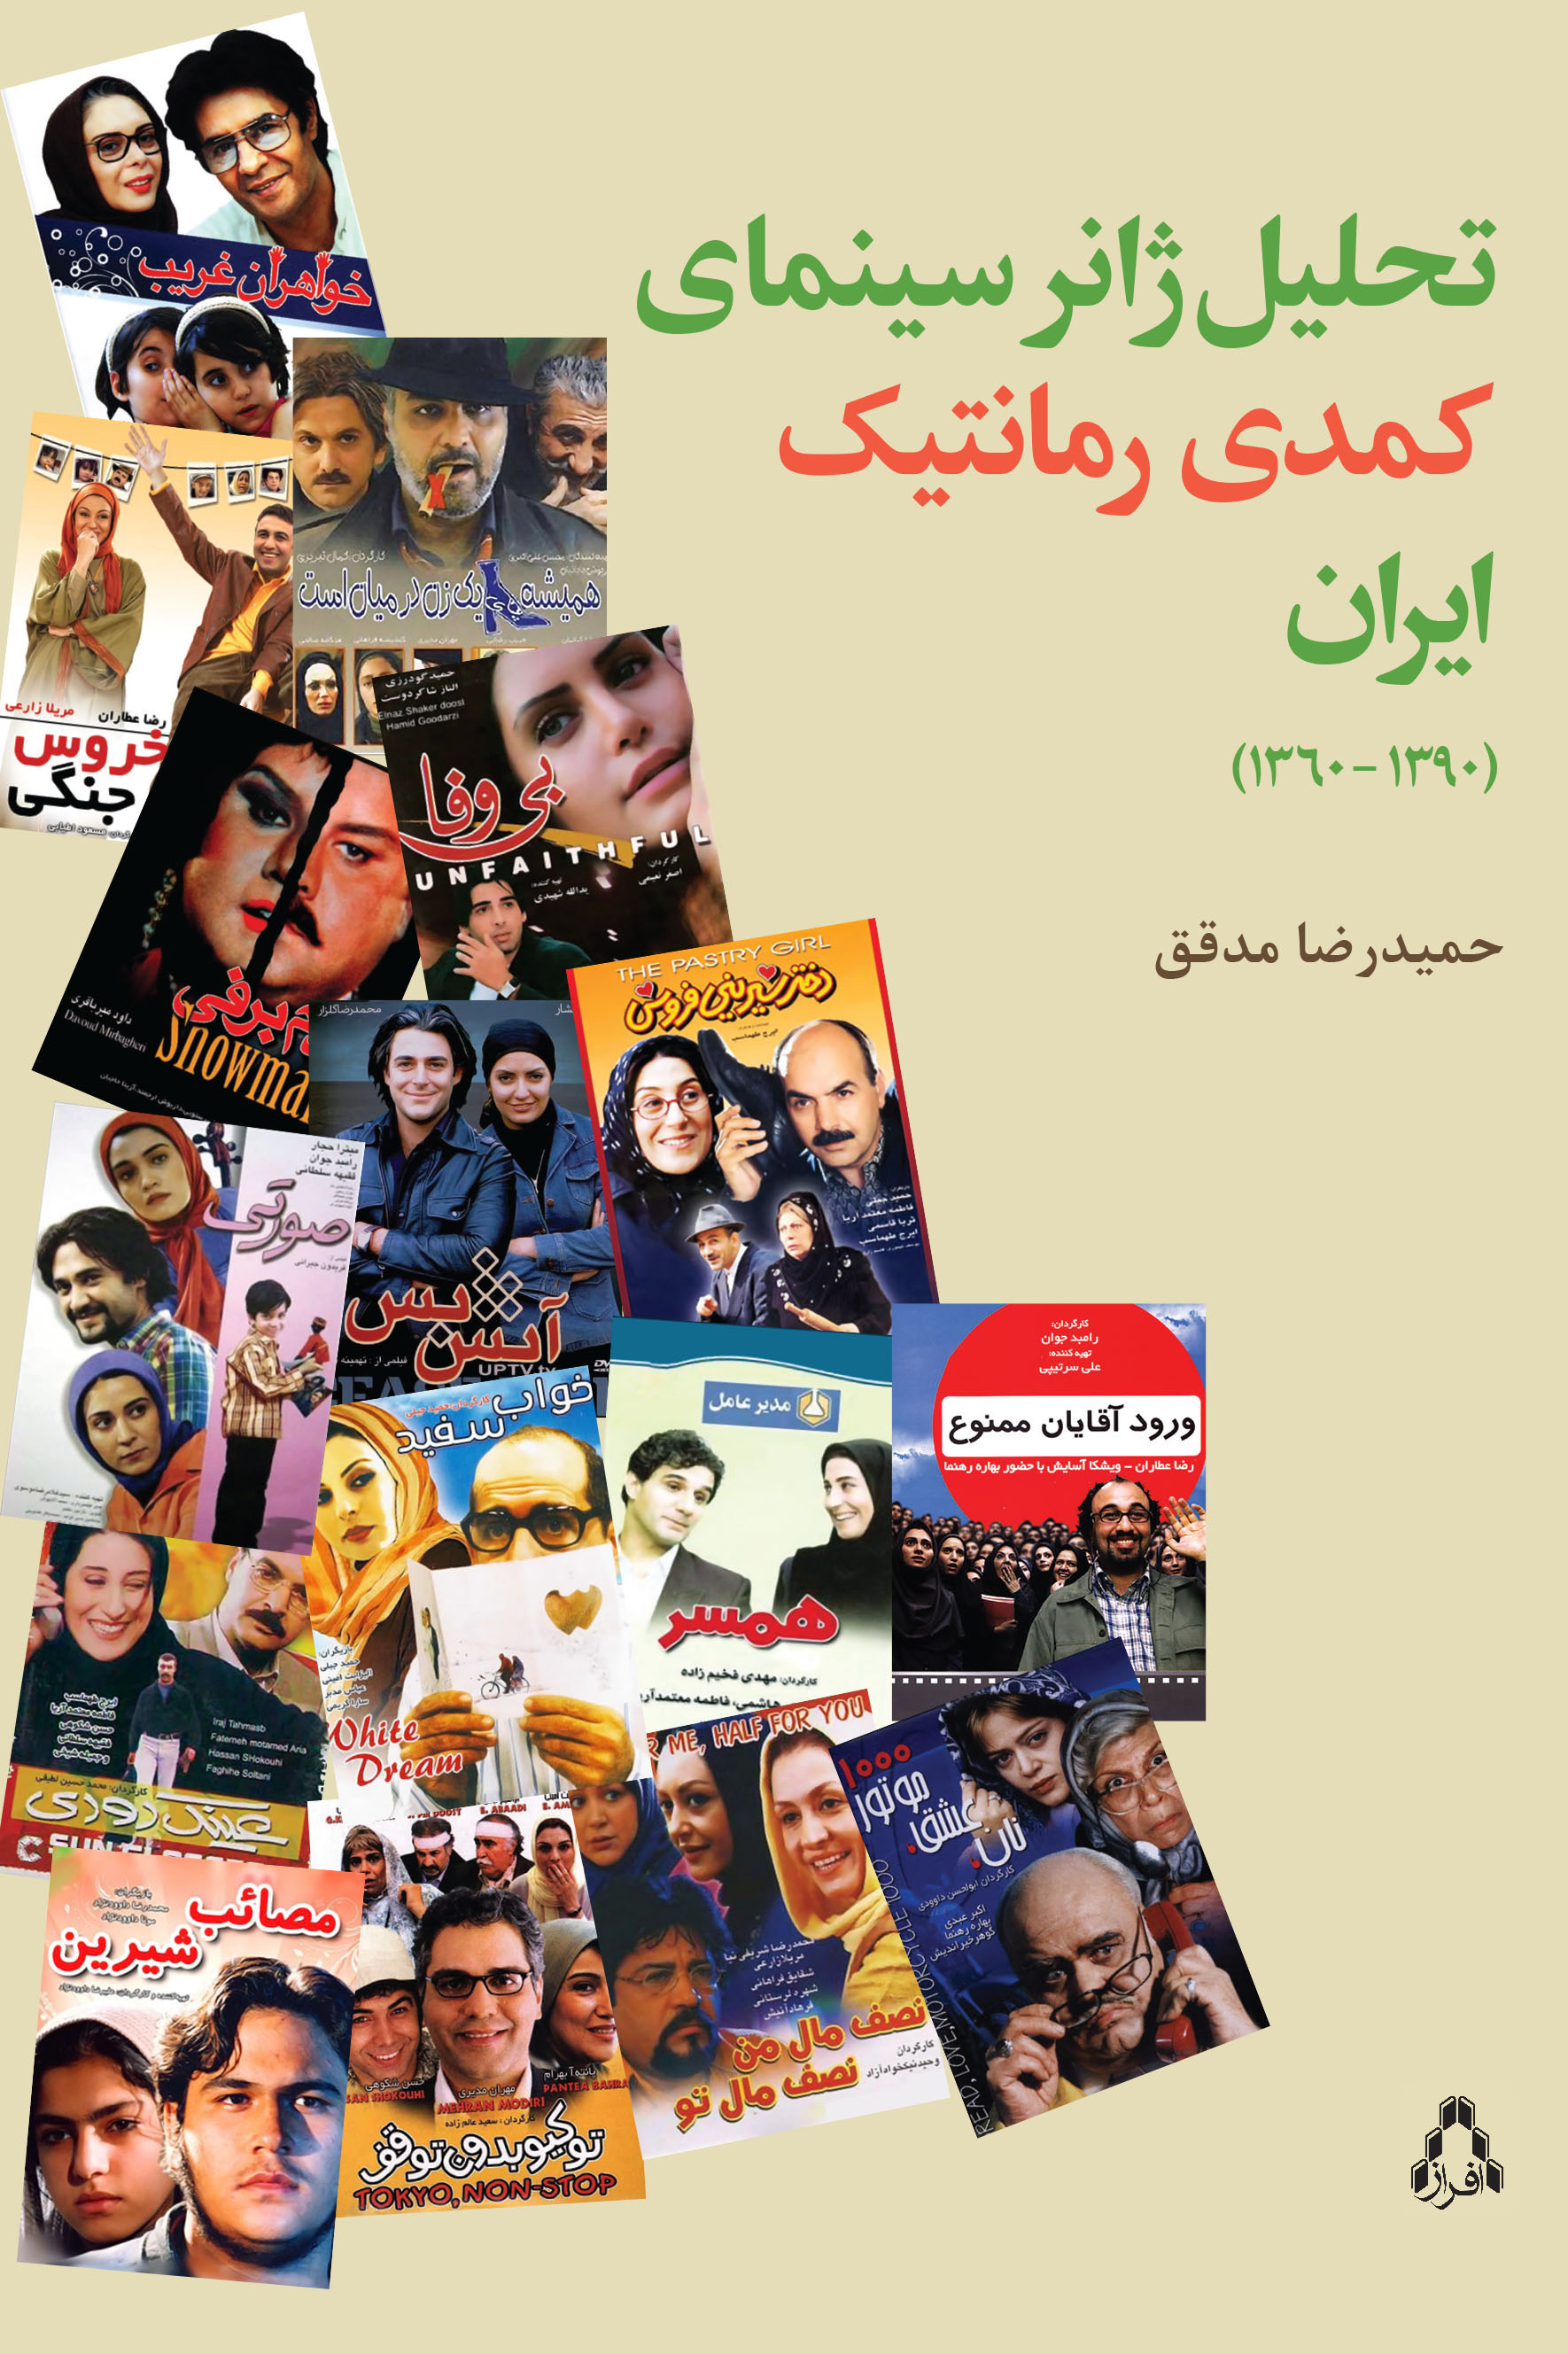 تحلیل ژانر سینمای کمدی رمانتیک ایران (۱۳۹۰- ۱۳۶۰)